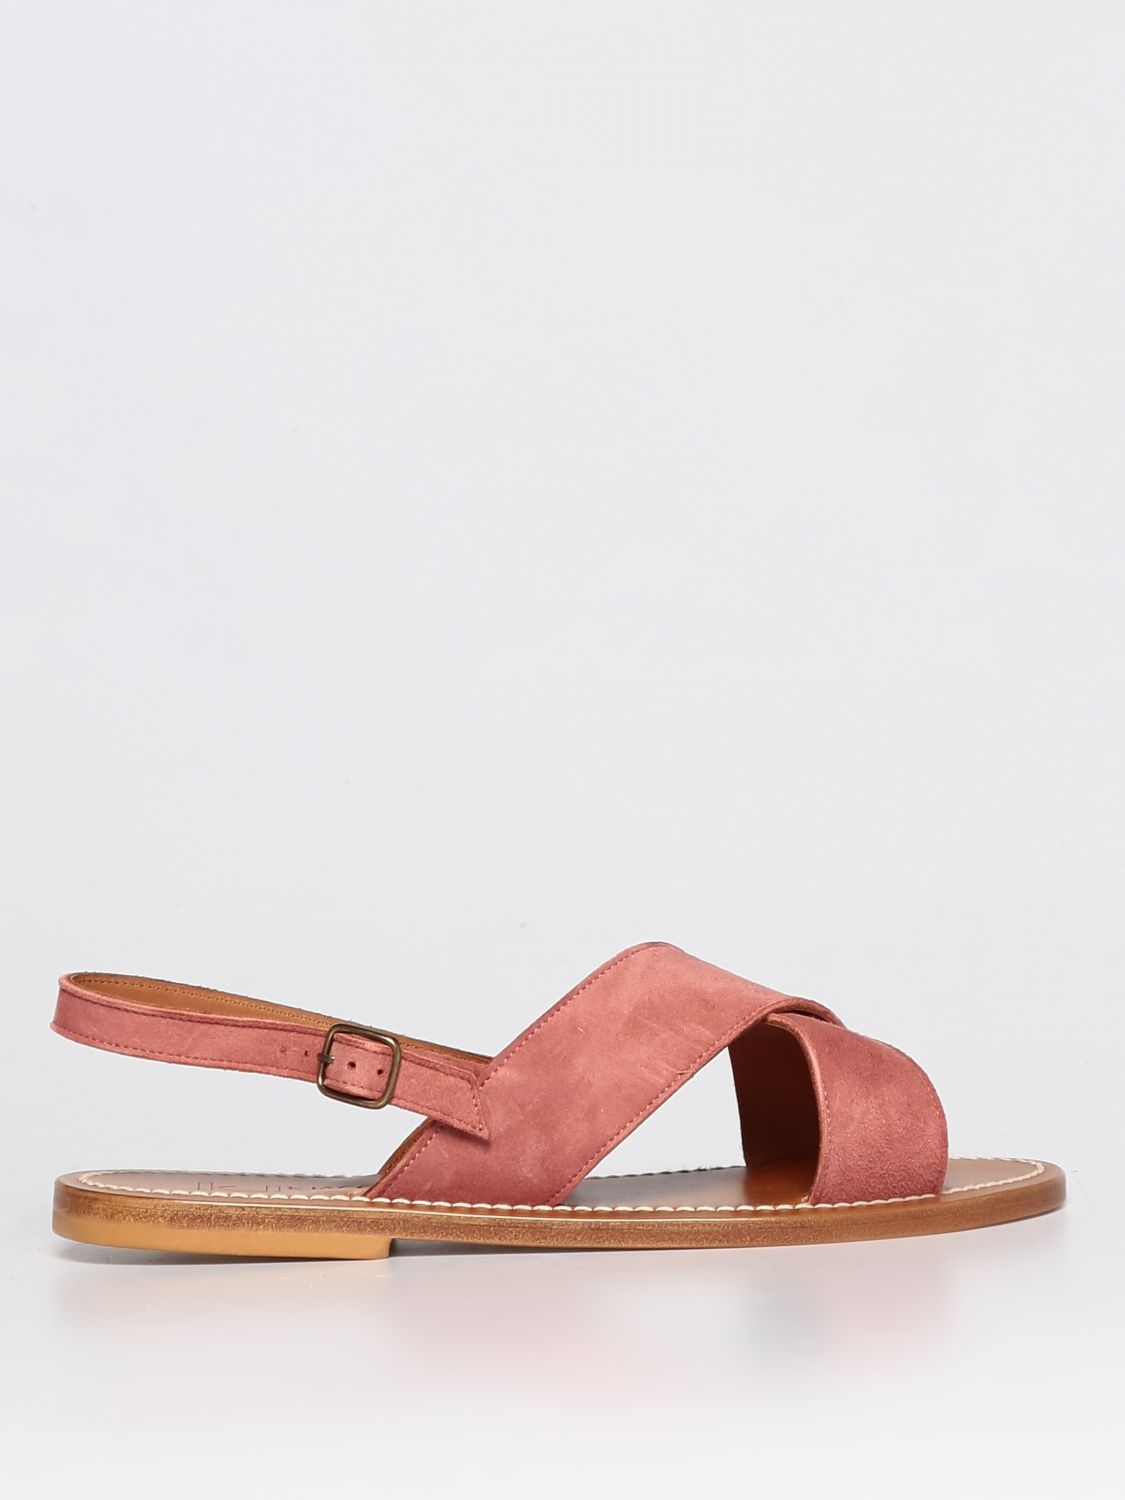 Kjacques Flat Sandals K. Jacques Woman Color Blush Pink